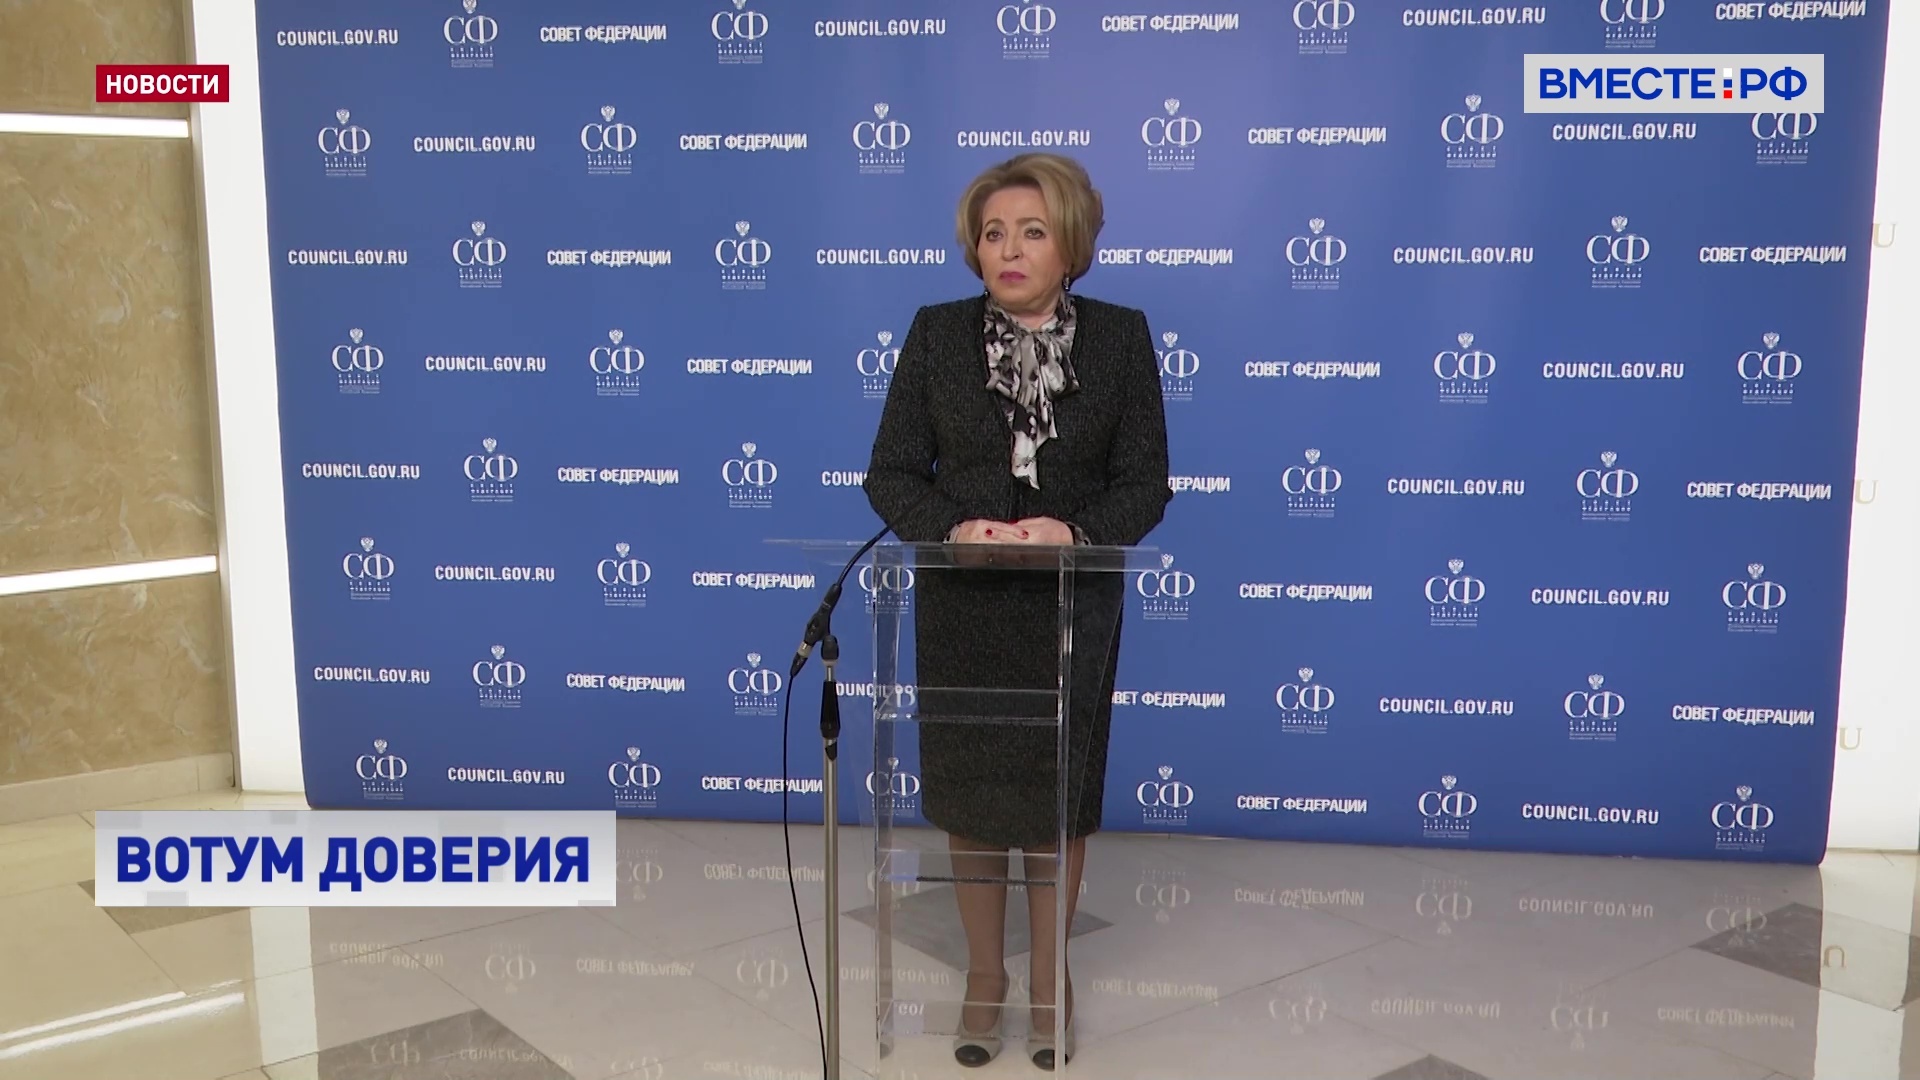 Матвиенко: международное сообщество будет проинформировано о попытках вмешательства в избирательный процесс в РФ